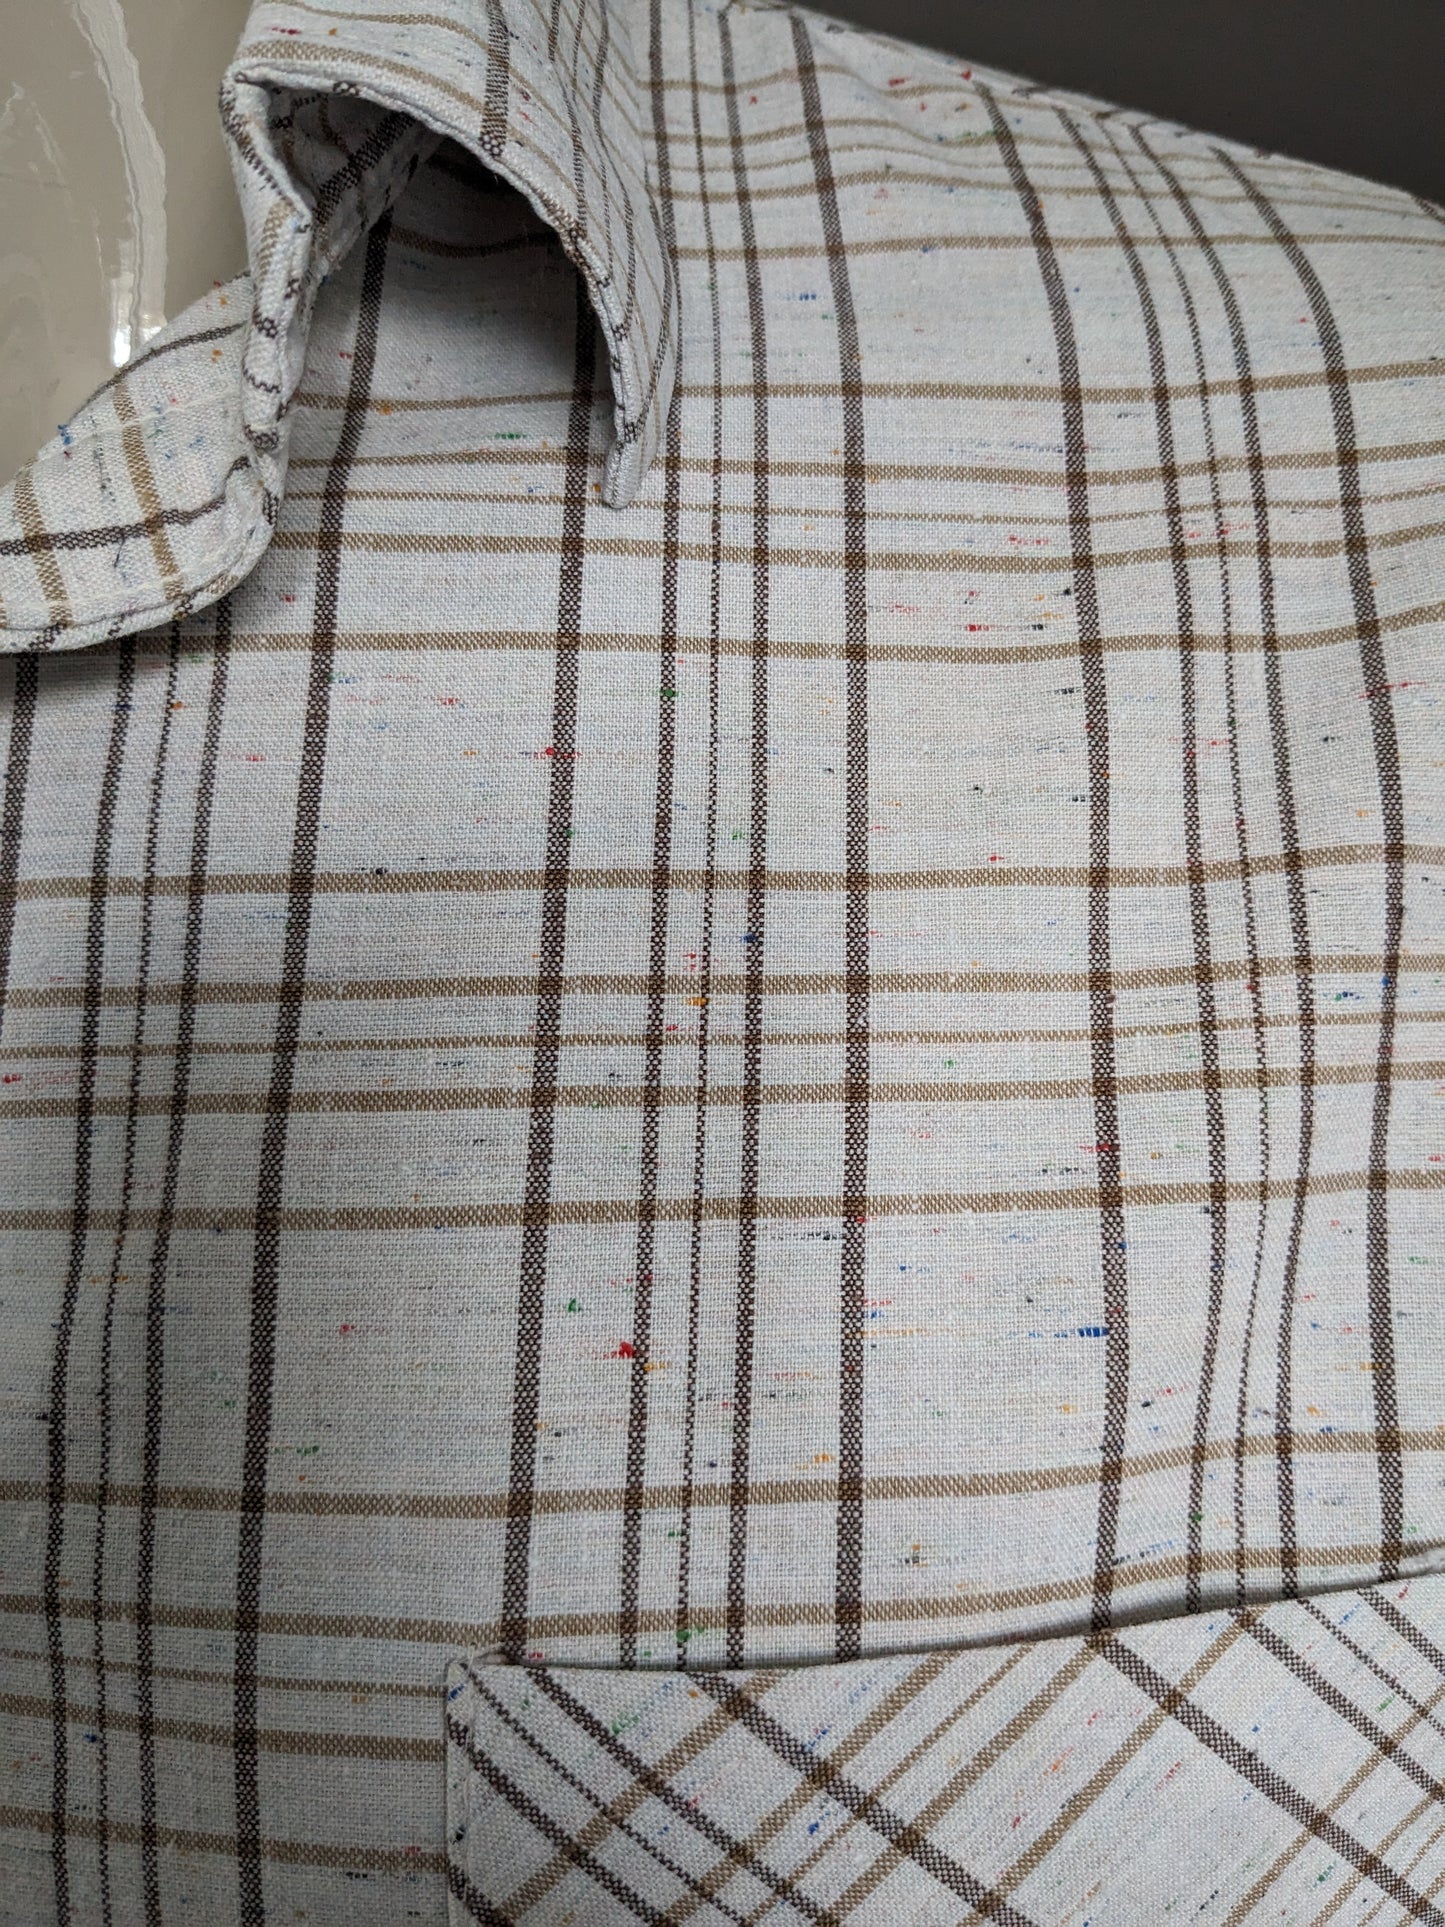 Camisa vintage sin marca. Beige Brown revisado con puntos de color. Talla L.